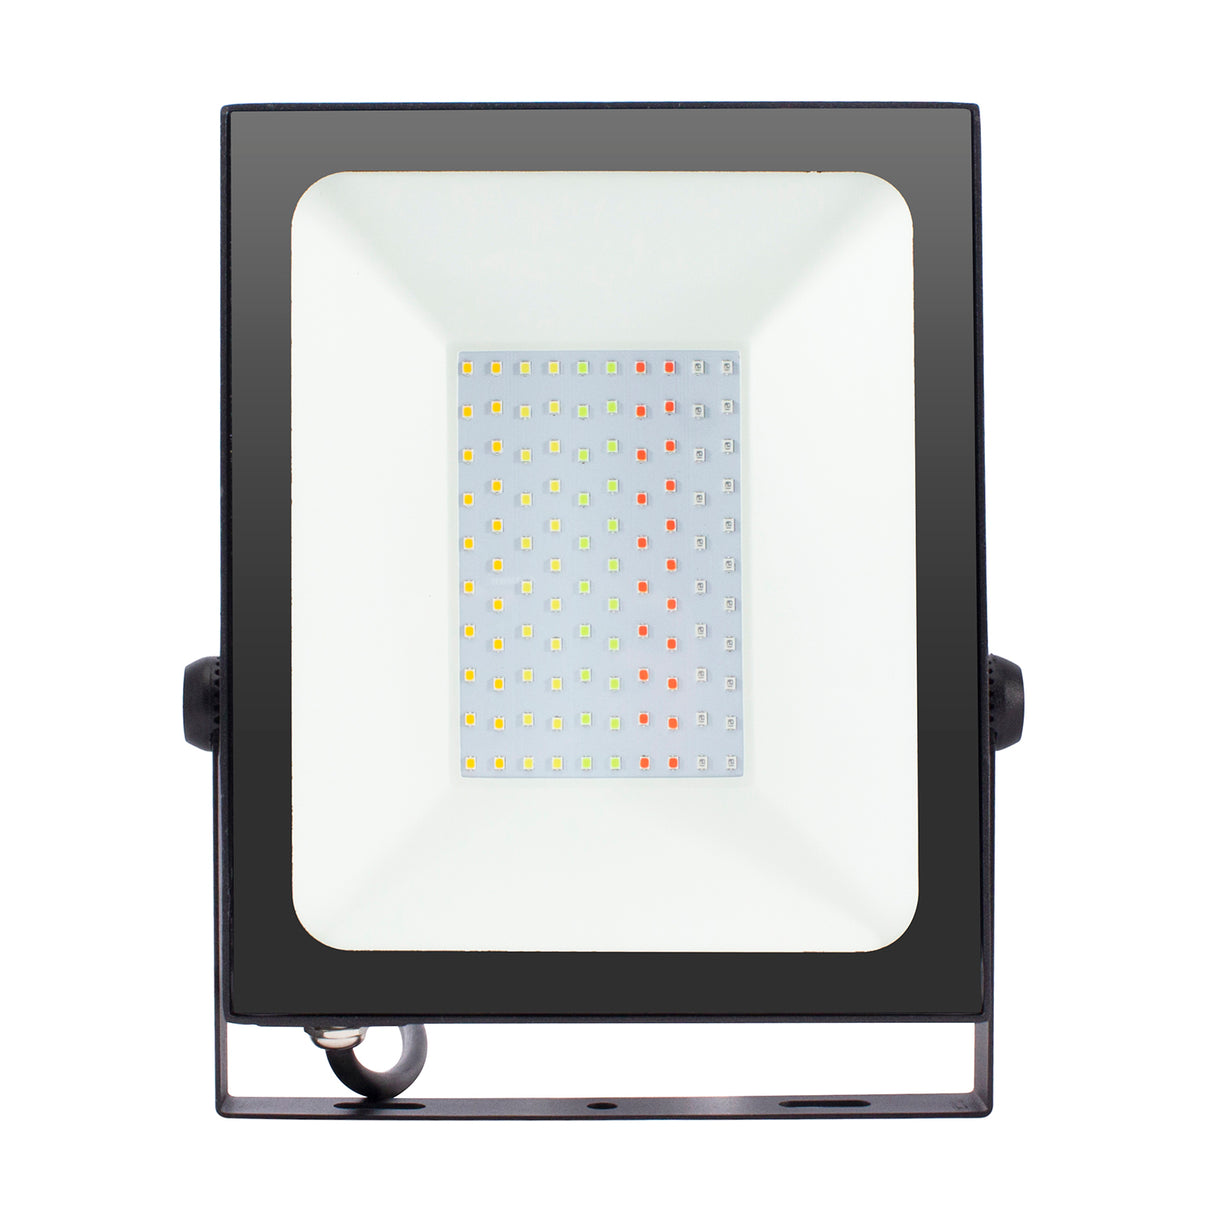 Foco proyector de exterior LED con alimentación 220V. Altas prestaciones y gran resistencia (IP65). Ofrece máximo control por Wifi. Amplias posibilidades de decoración con luz RGB+CCT.